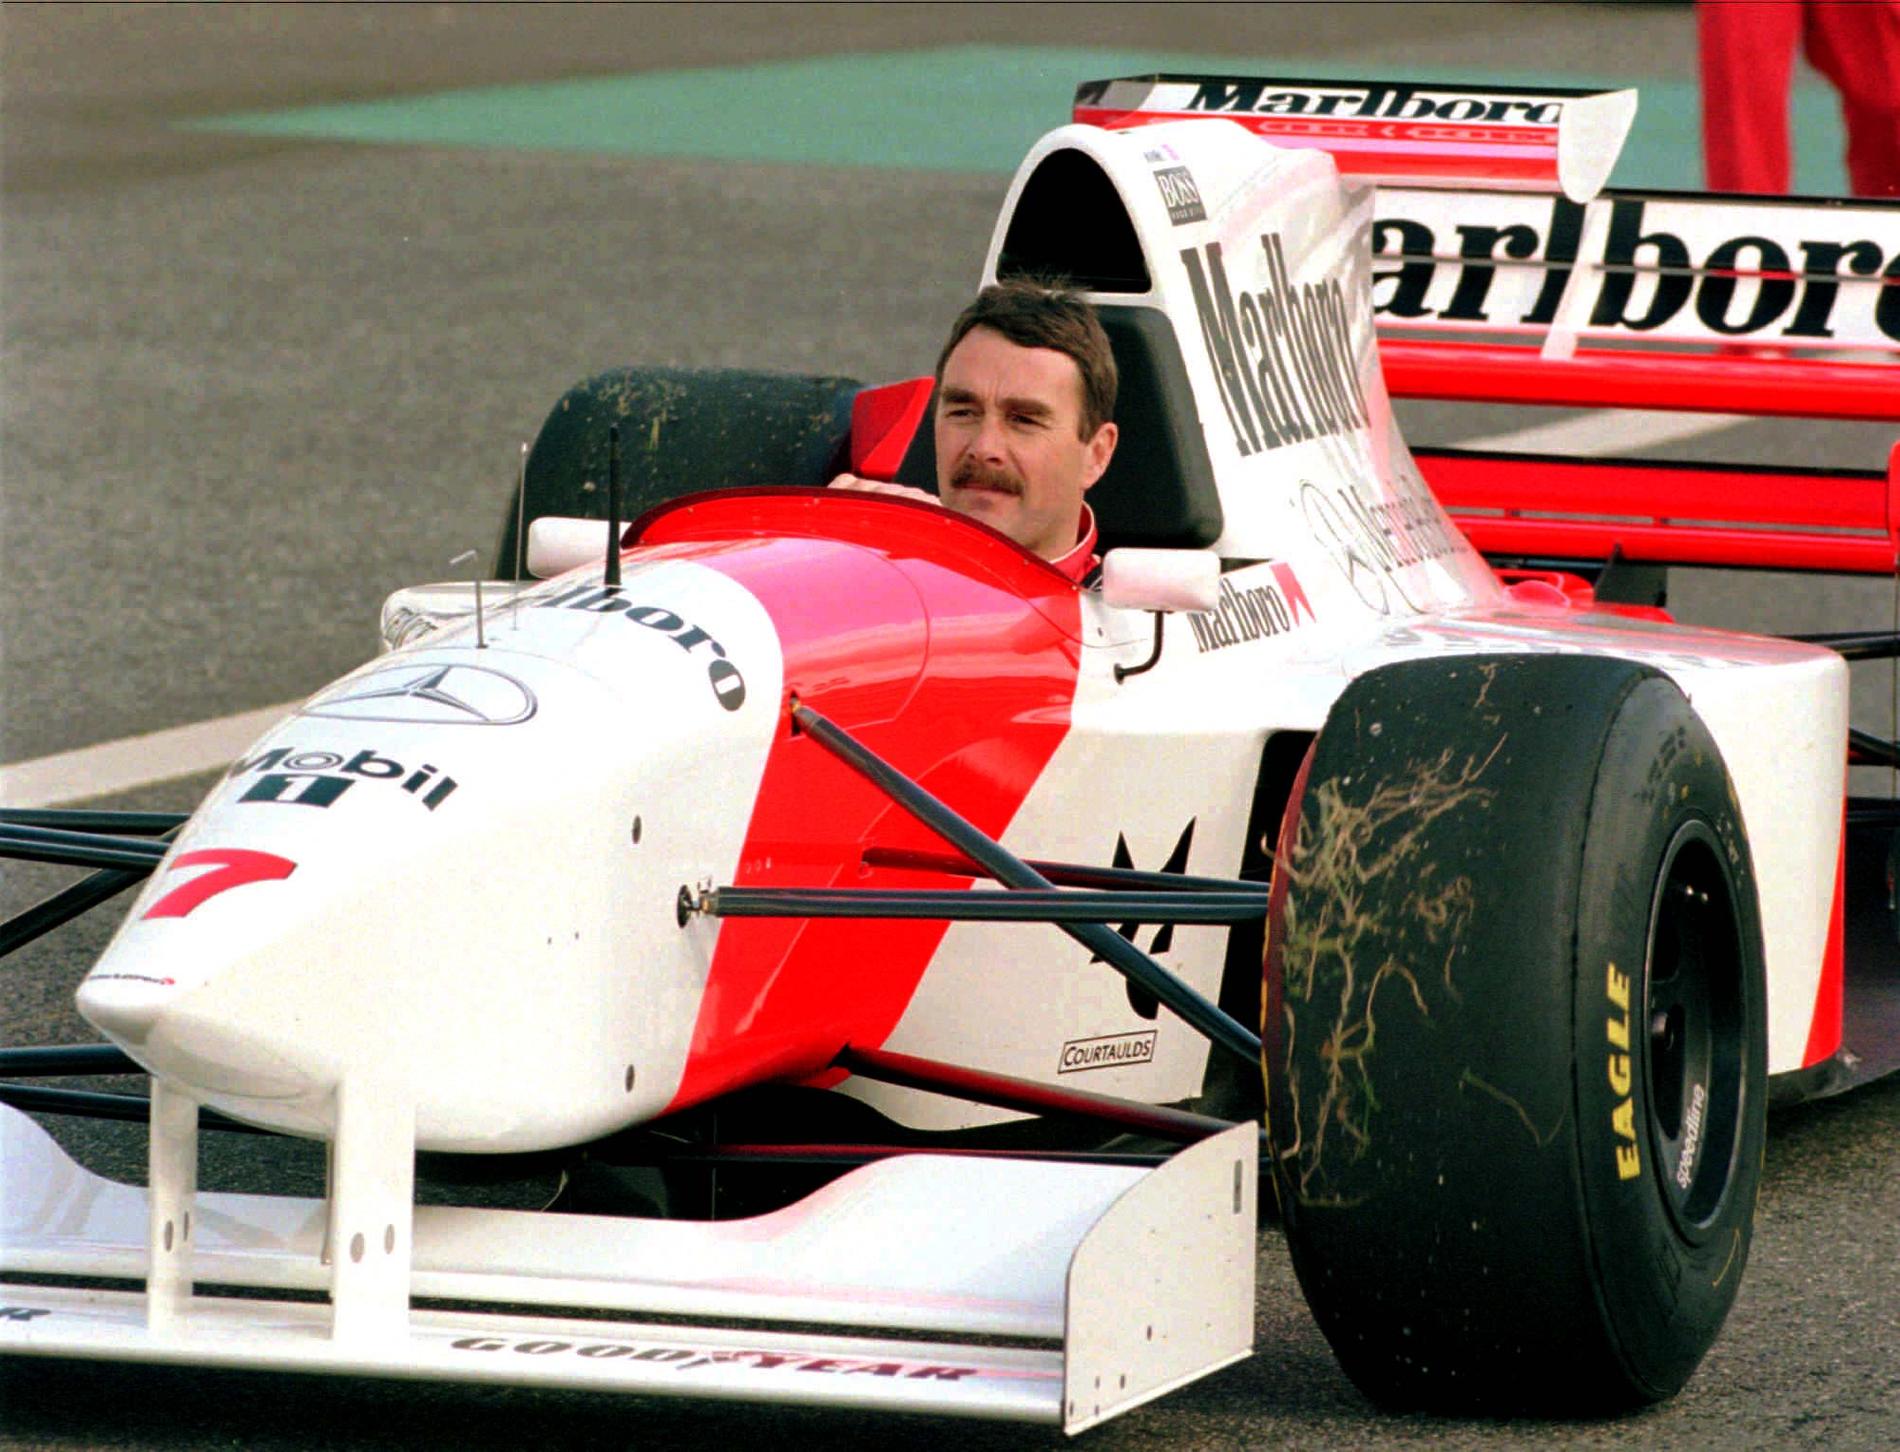 1992 tog Nigel Mansell hem VM-titeln körandes för Williams-stallet. Här syns han i en McLaren från 1995.